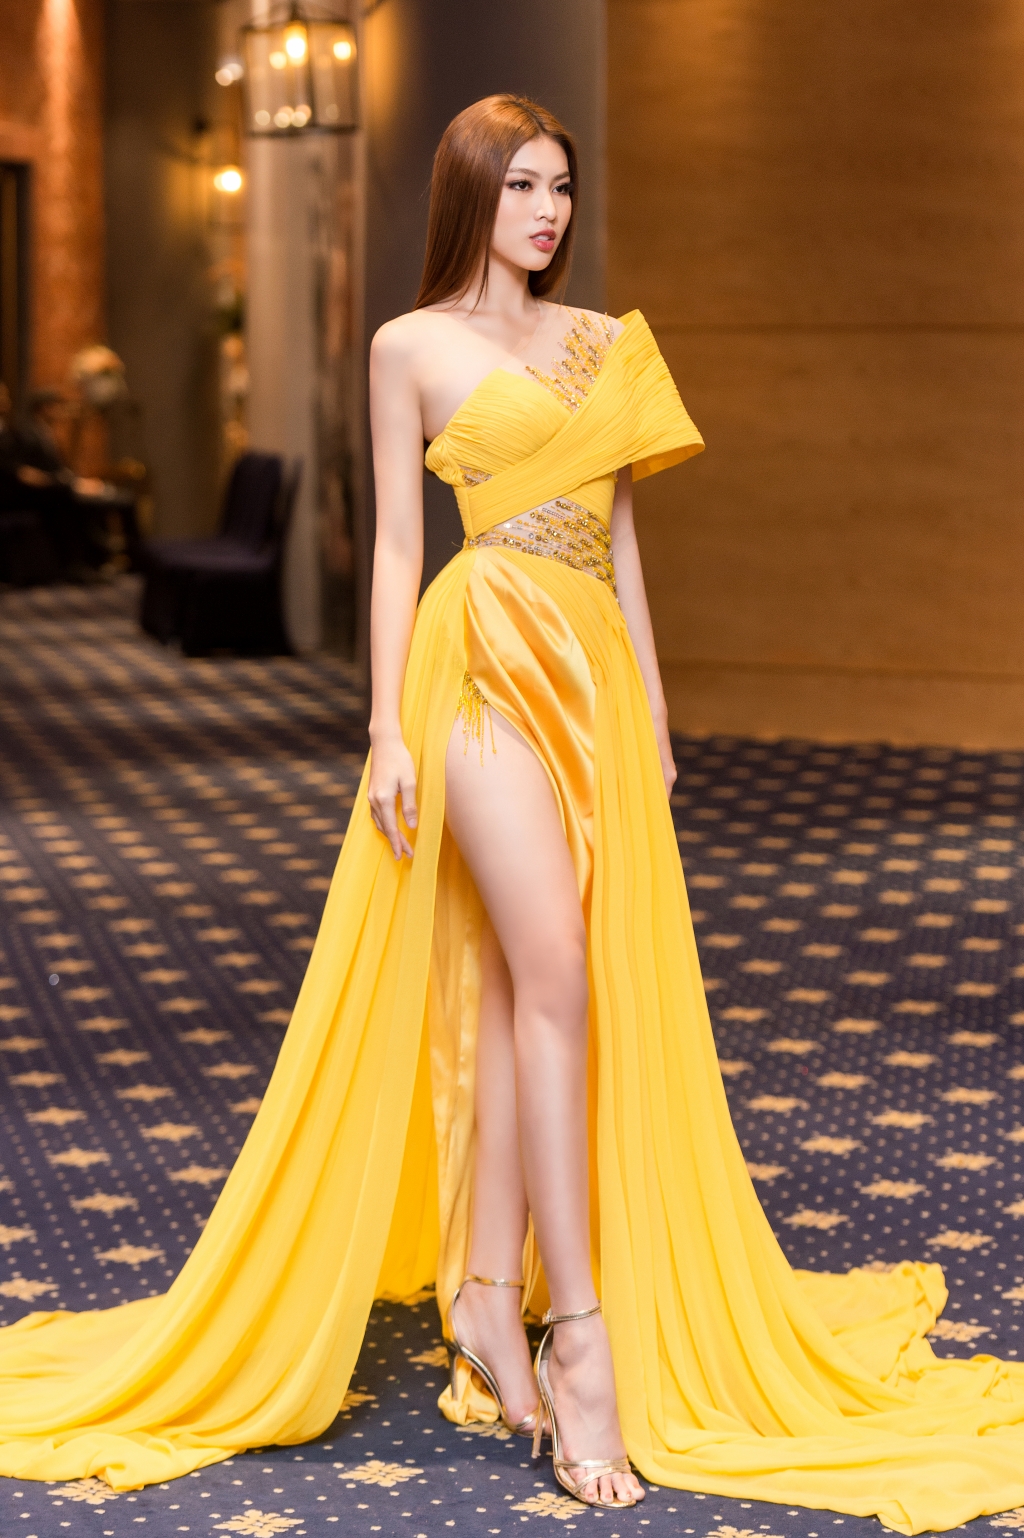 Tại một sự kiện, Ngọc Thảo lựa chọn chiếc váy nổi bật với đường xẻ tà cao khoe lợi thế đôi chân dài miên man.